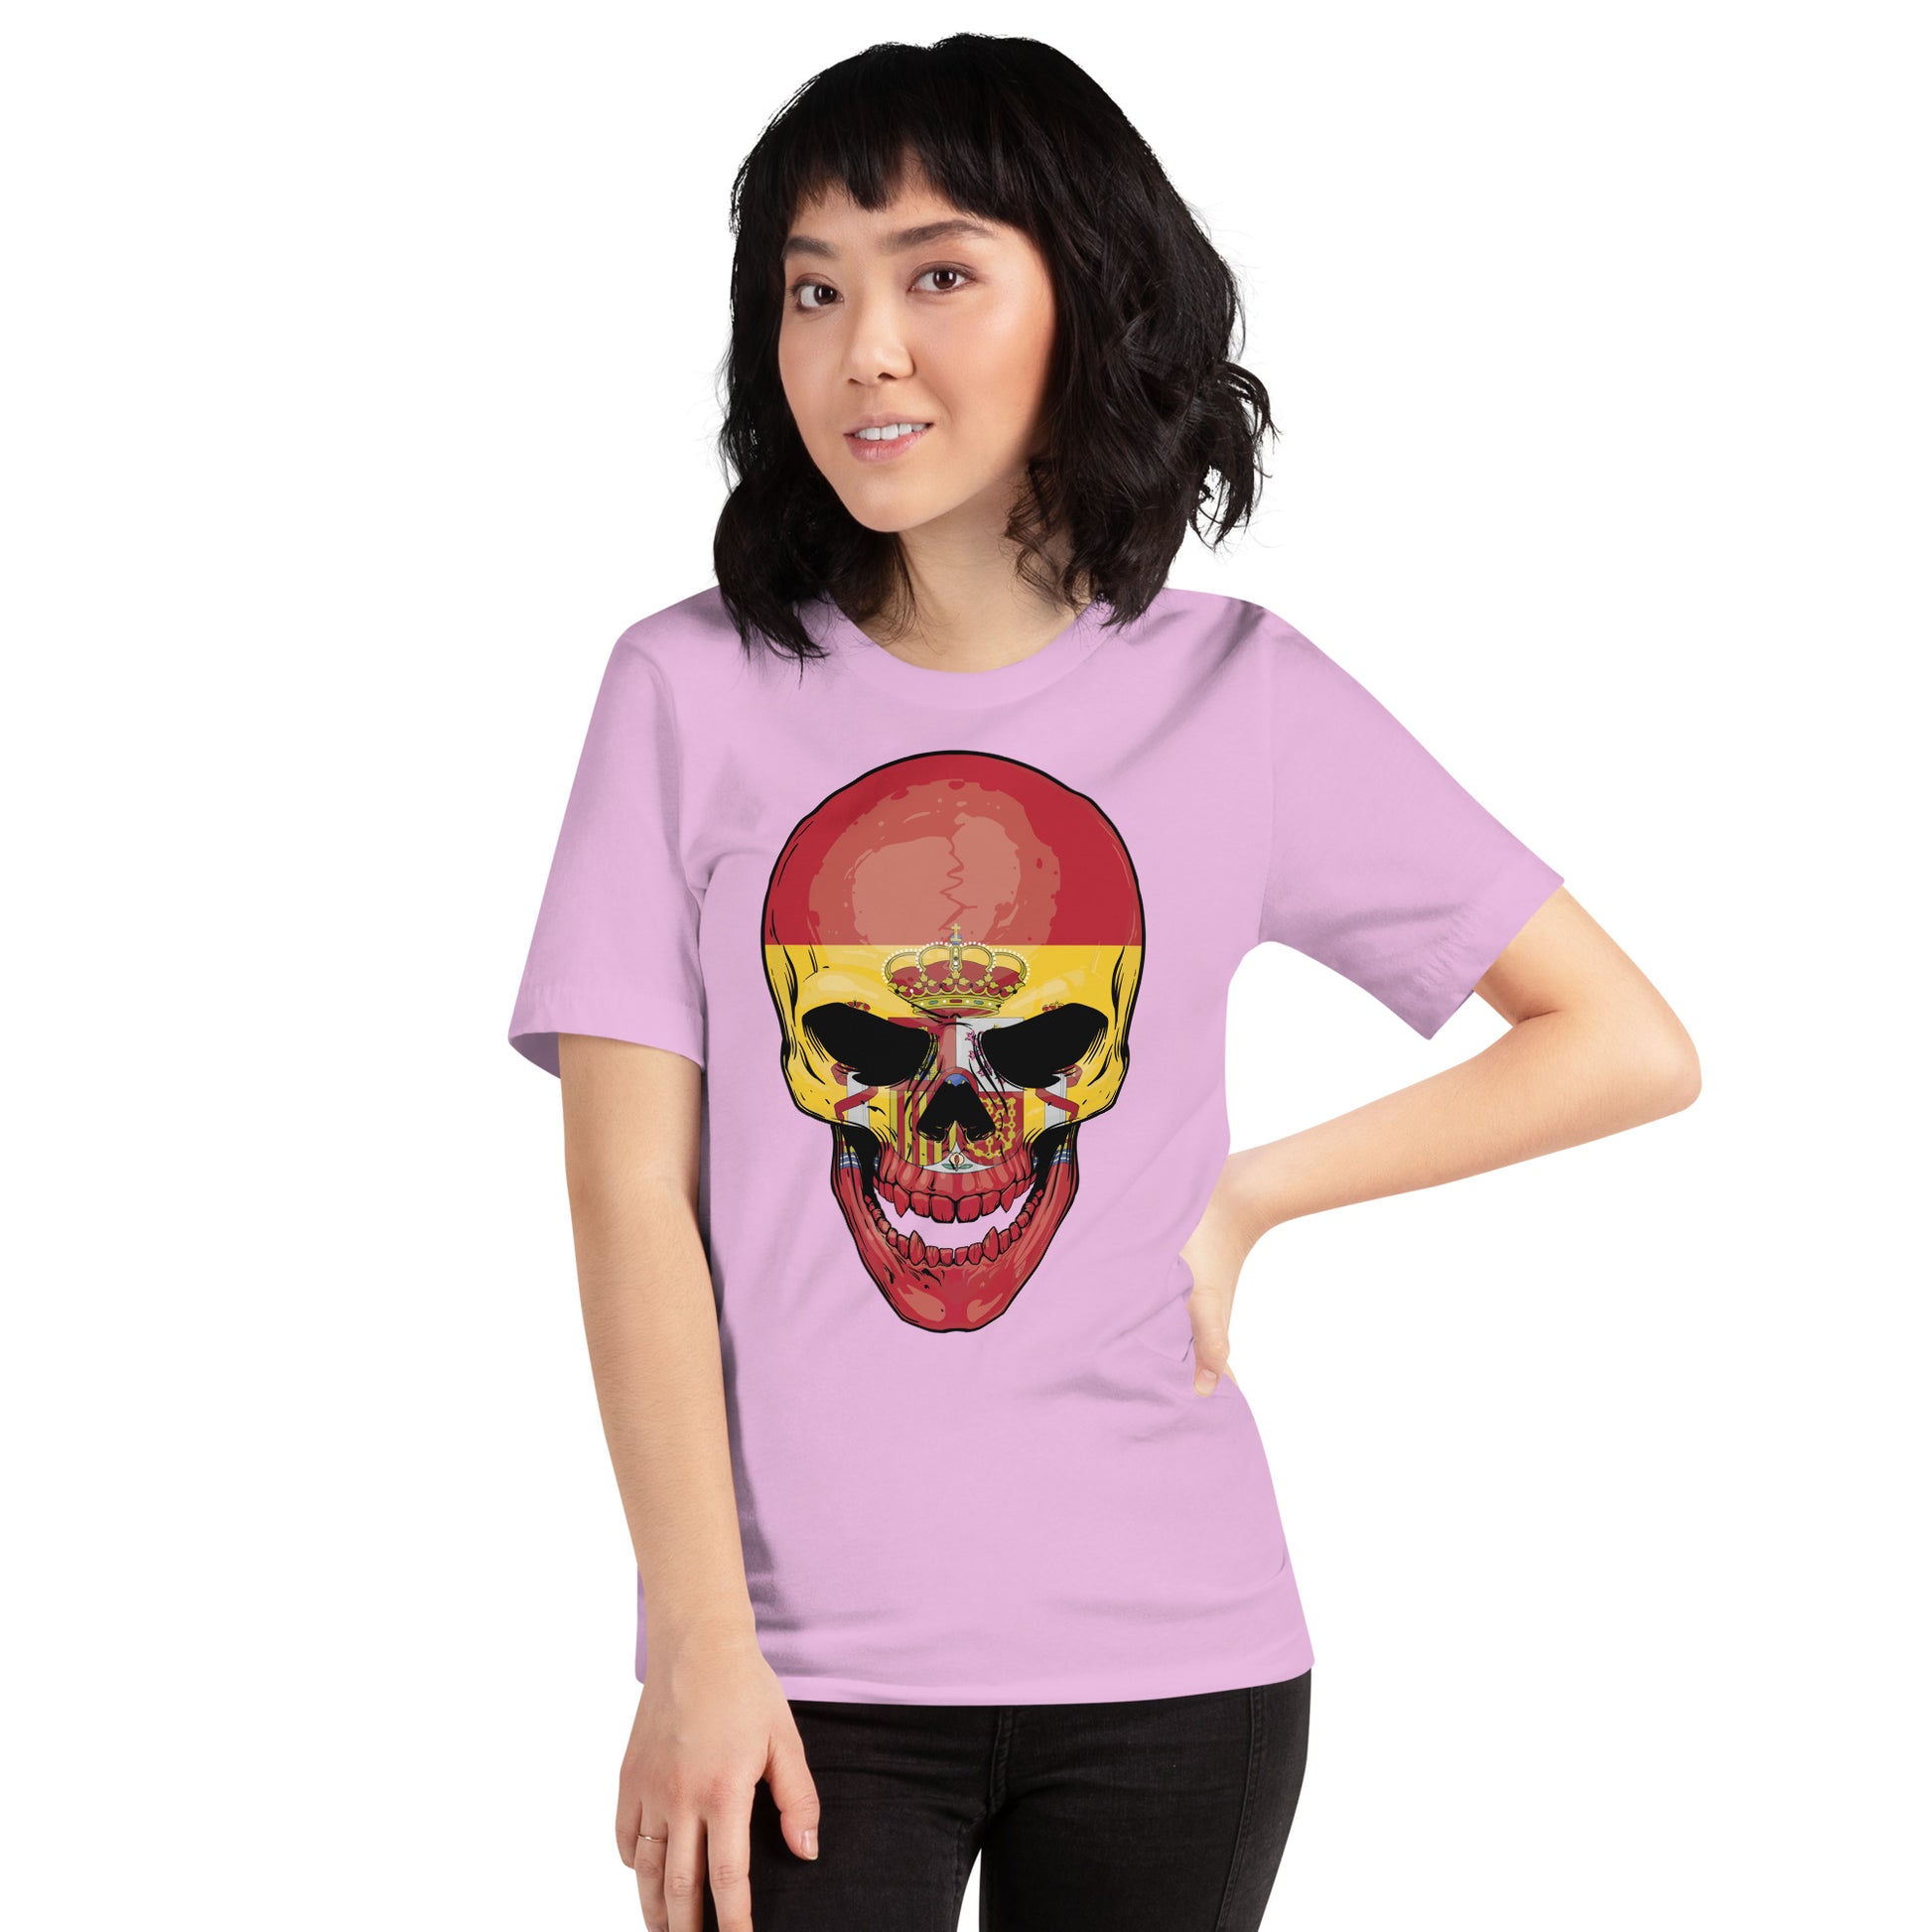 Proud Spanish Skull T-Shirt